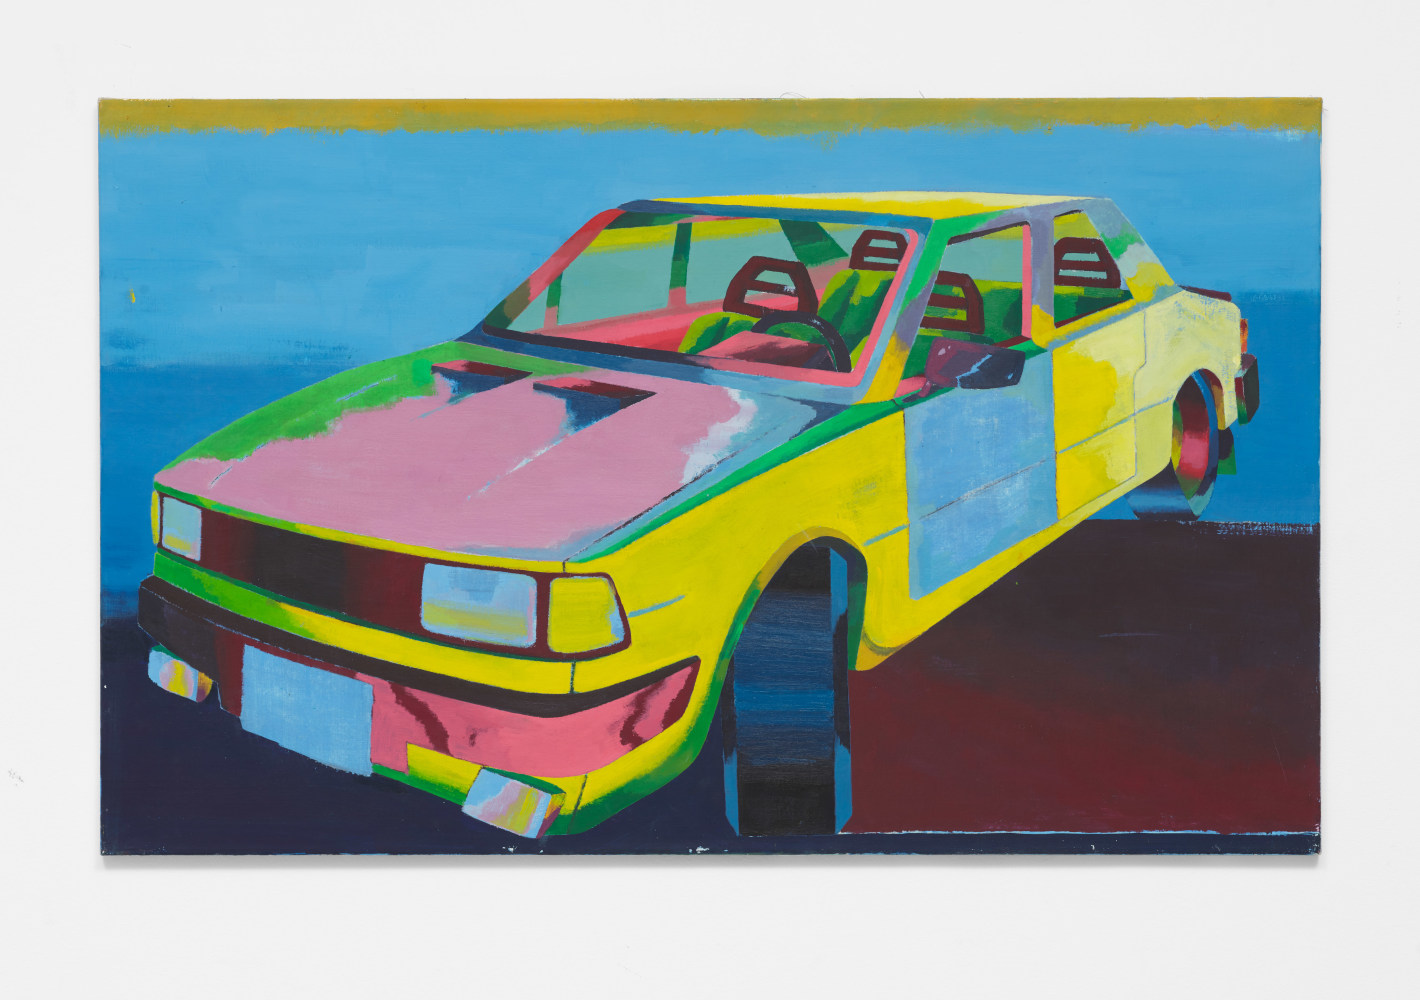 Car 2, 2019
Oil on canvas
35.43h x 57.09w in
90h x 145w cm